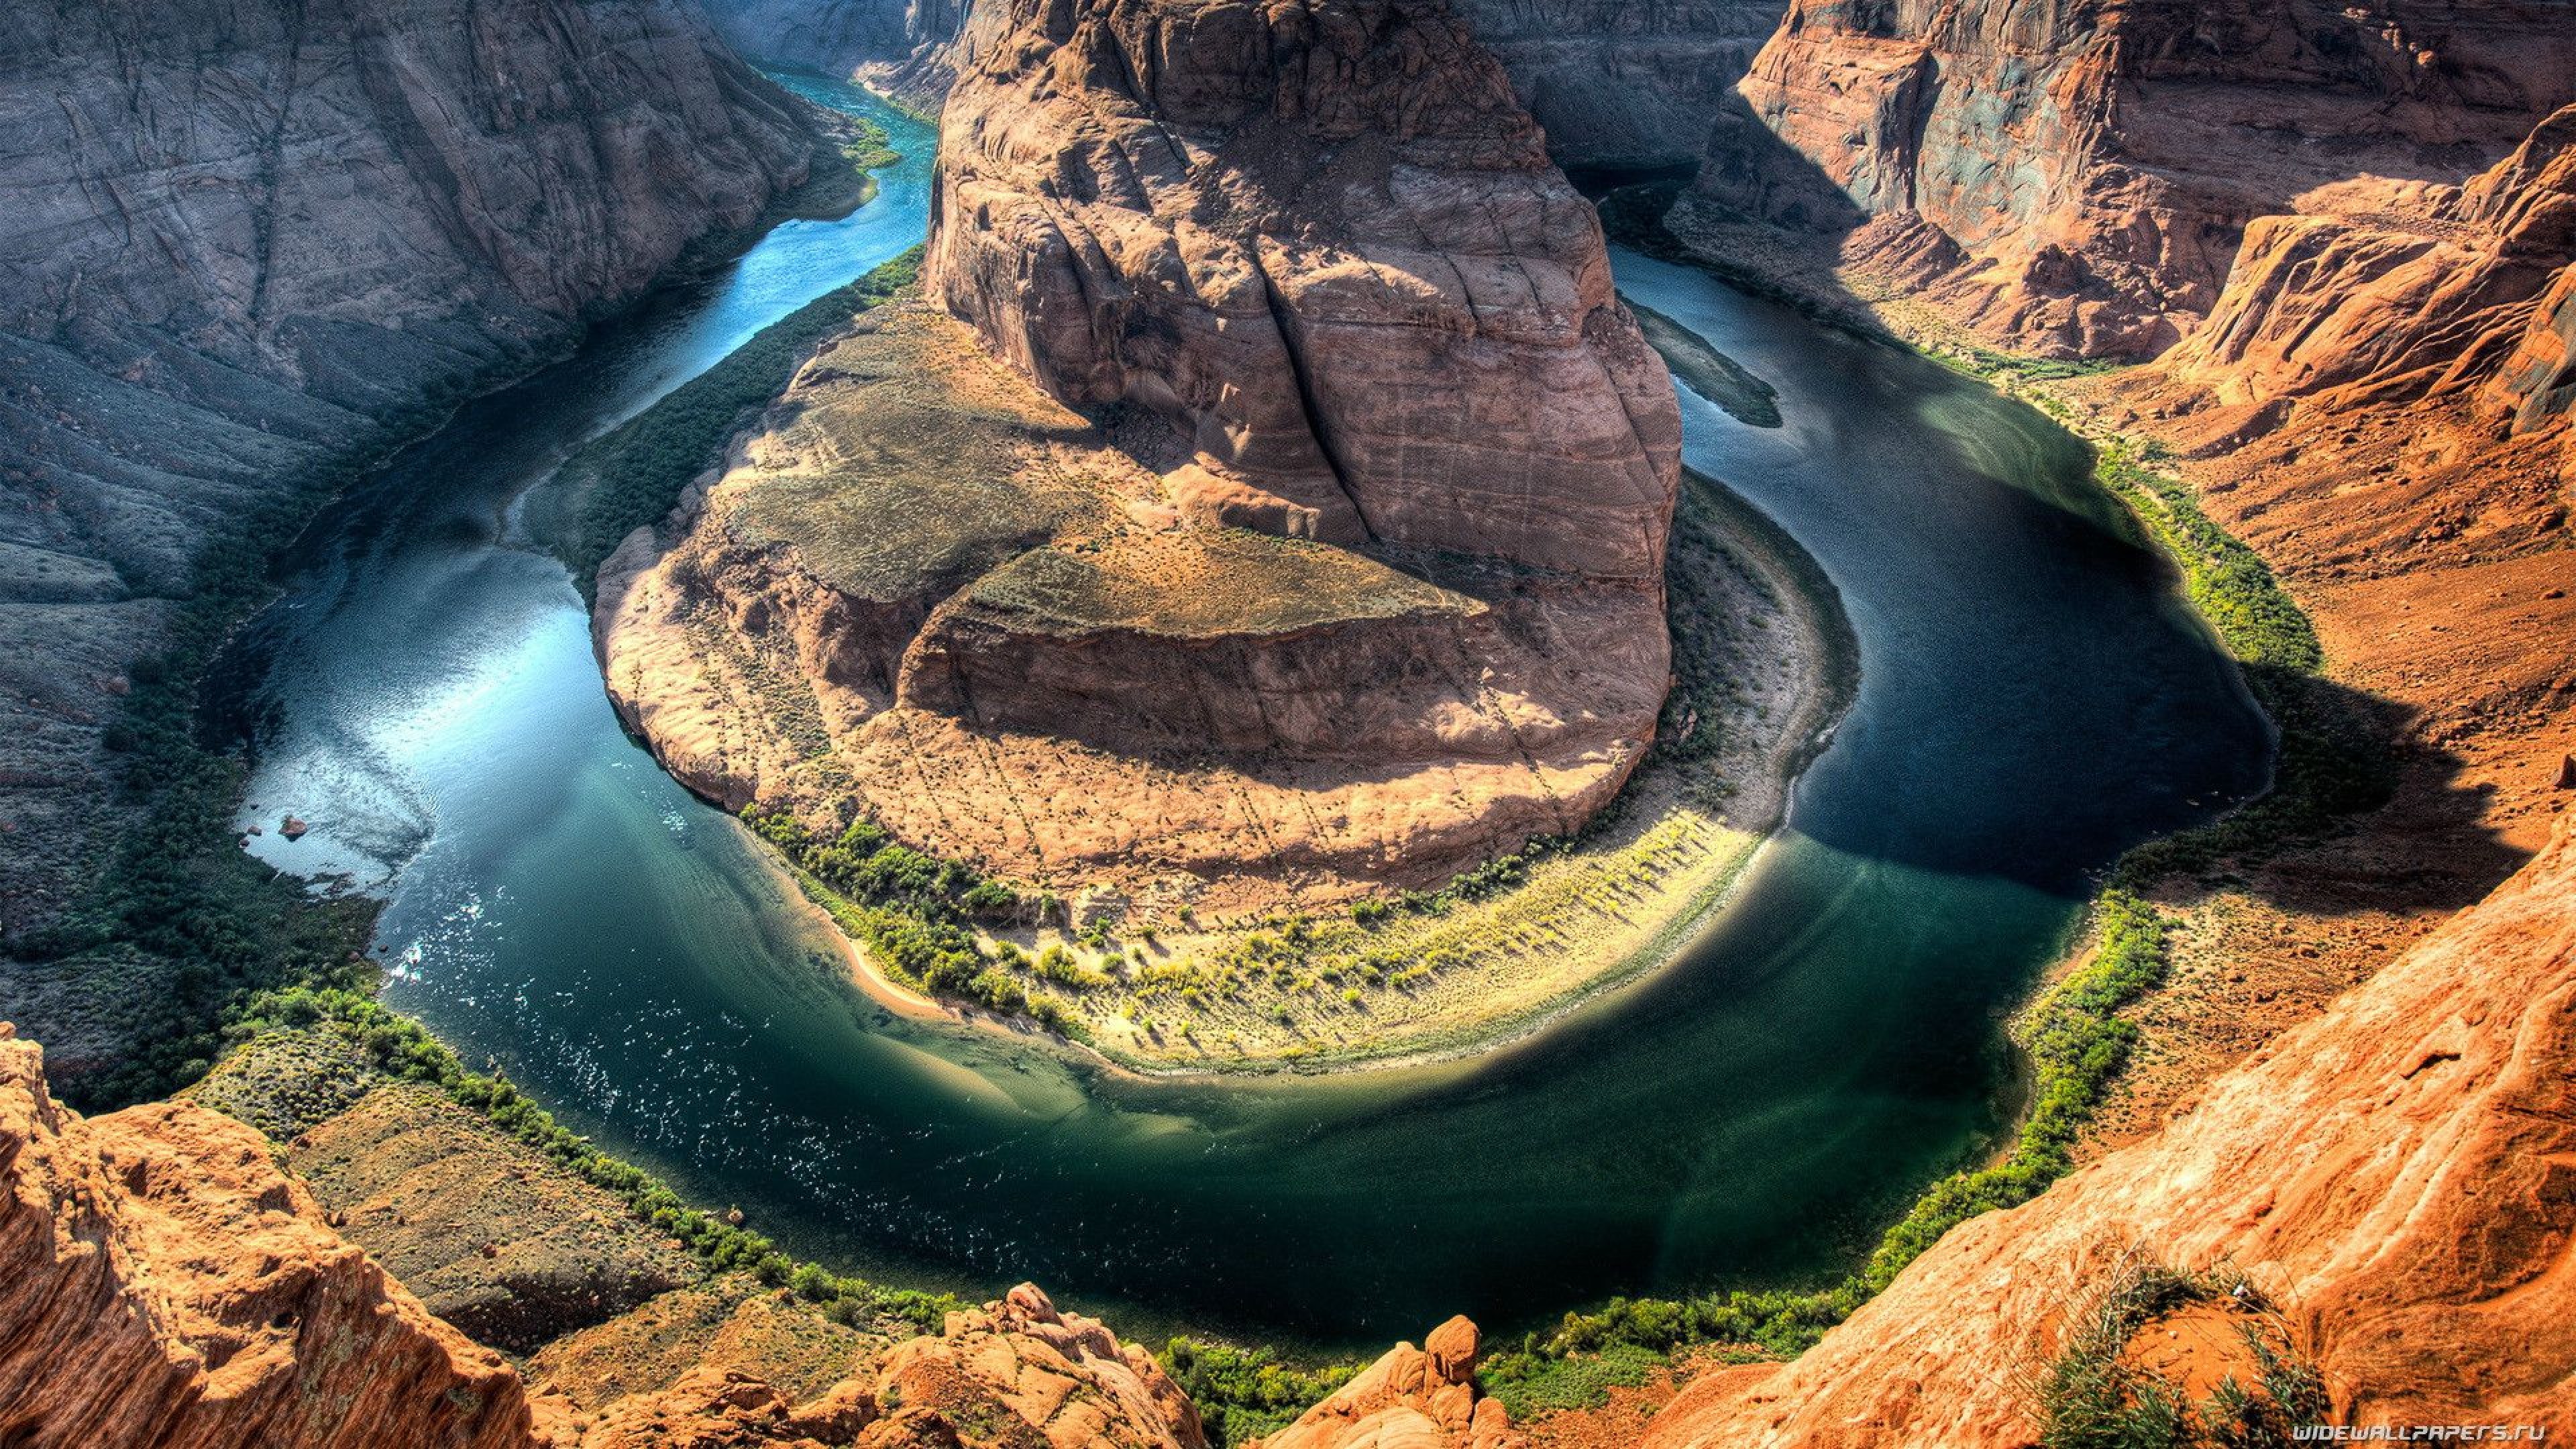 Обои на телефон самые красивые в мире. Каньон подкова Аризона. Изгиб реки Колорадо (США). Каньоны Аргентины. Река Колорадо, Амазонка.